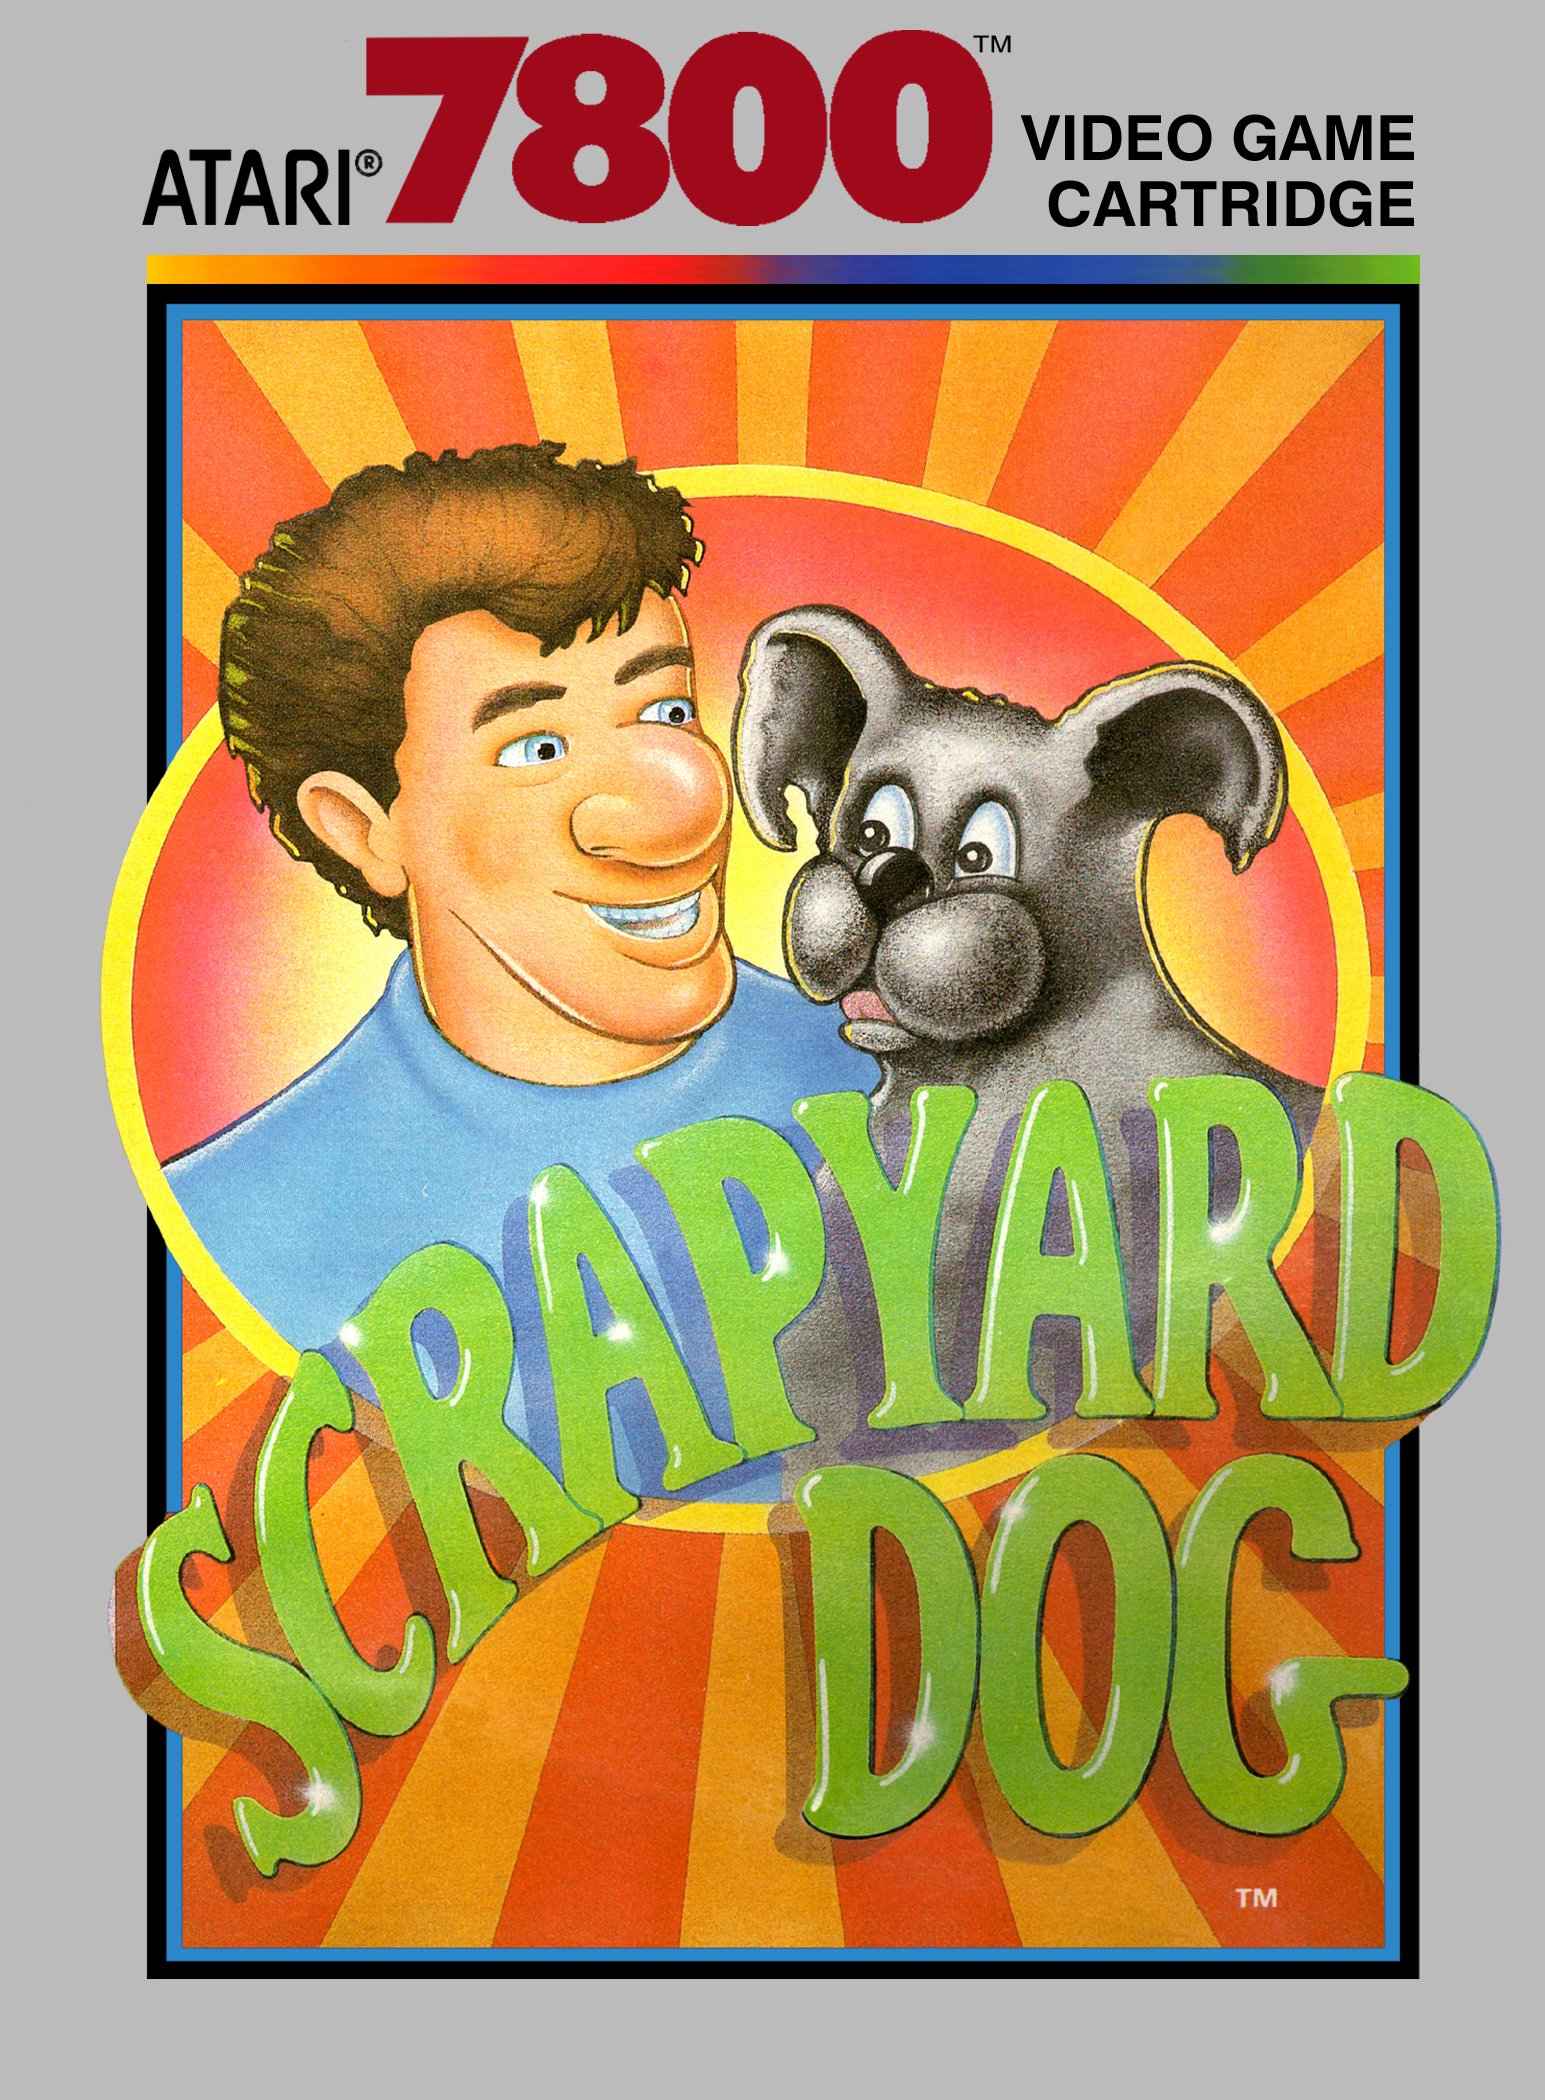 Image of Scrapyard Dog